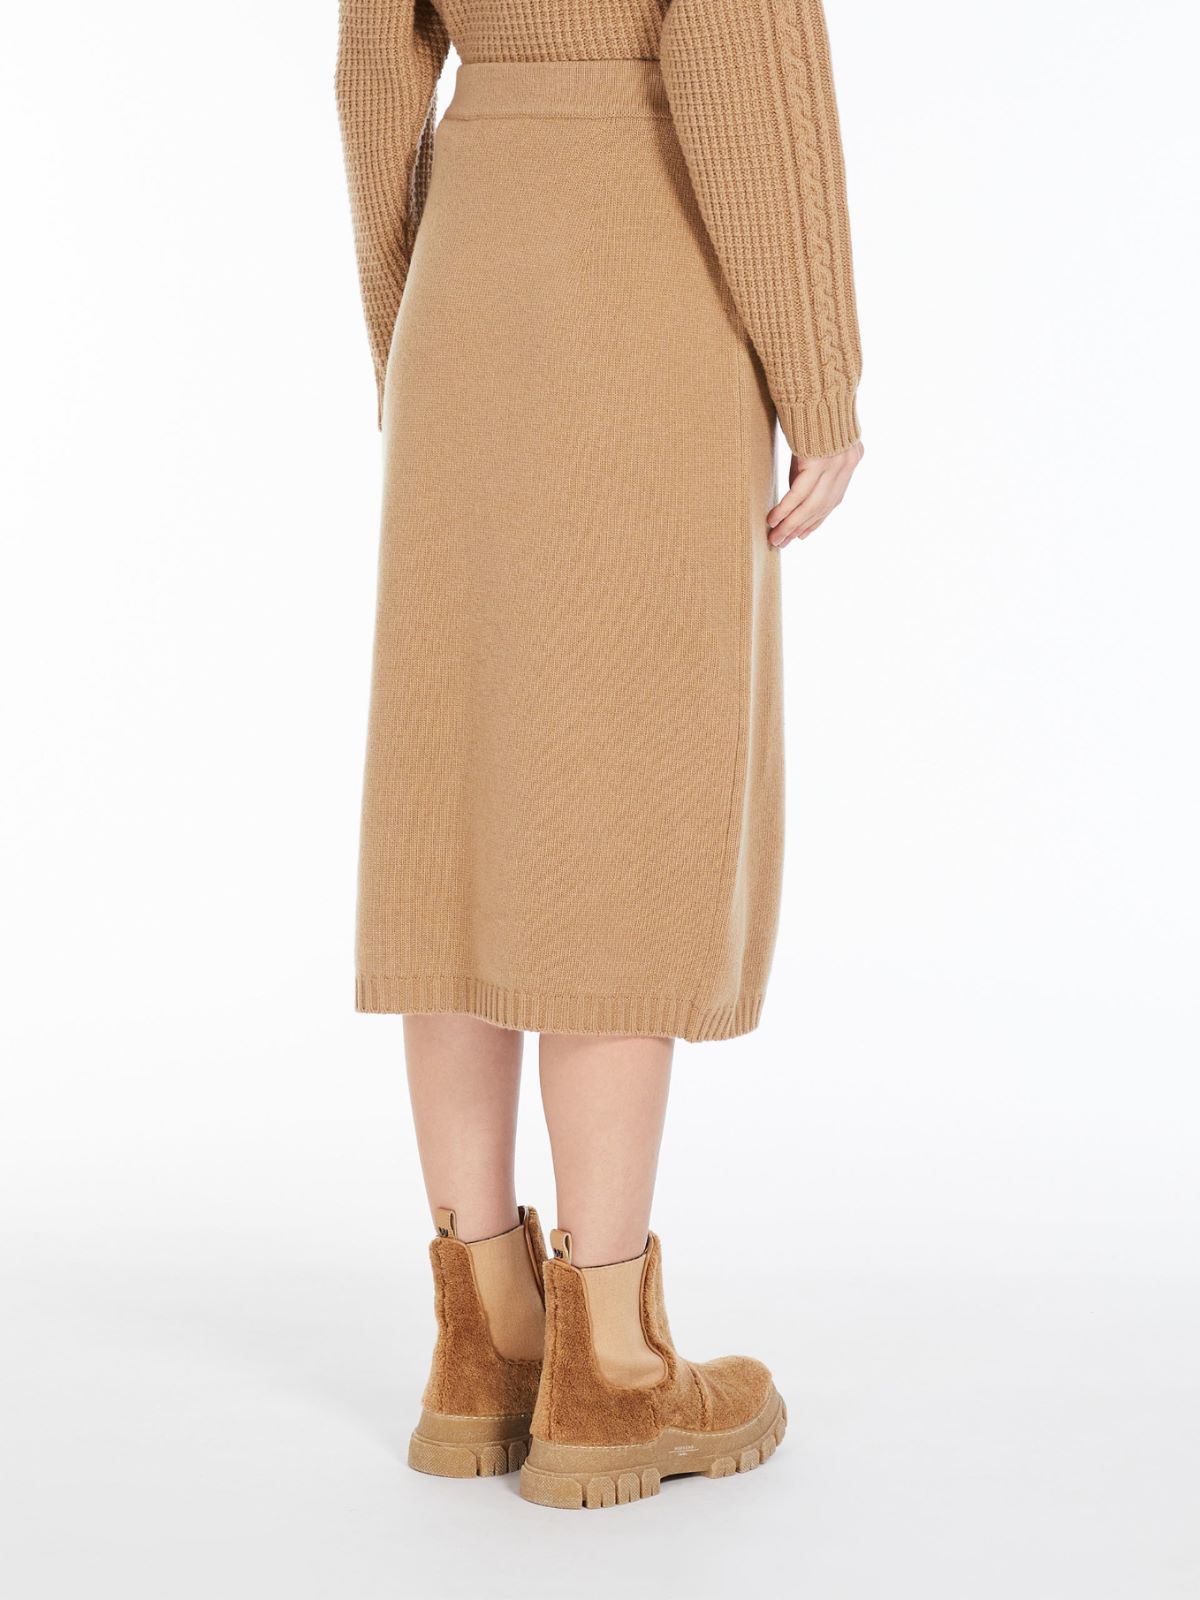 Wool yarn skirt - CAMEL - Weekend Max Mara - 3